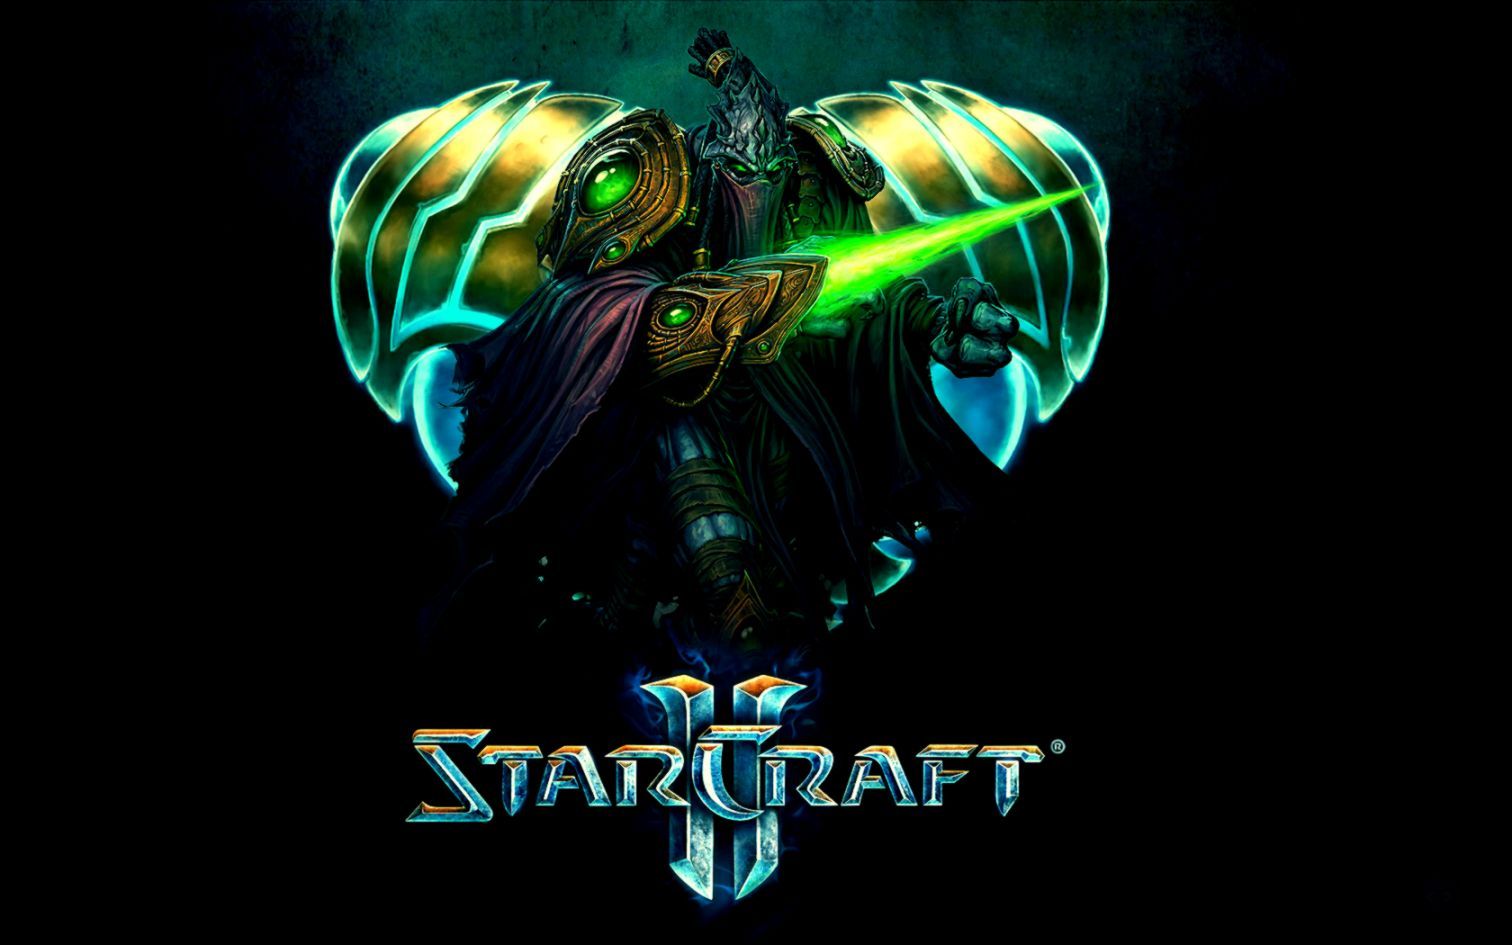 Starcraft Ii Protoss Logo Artwork Video Games Wallpaper